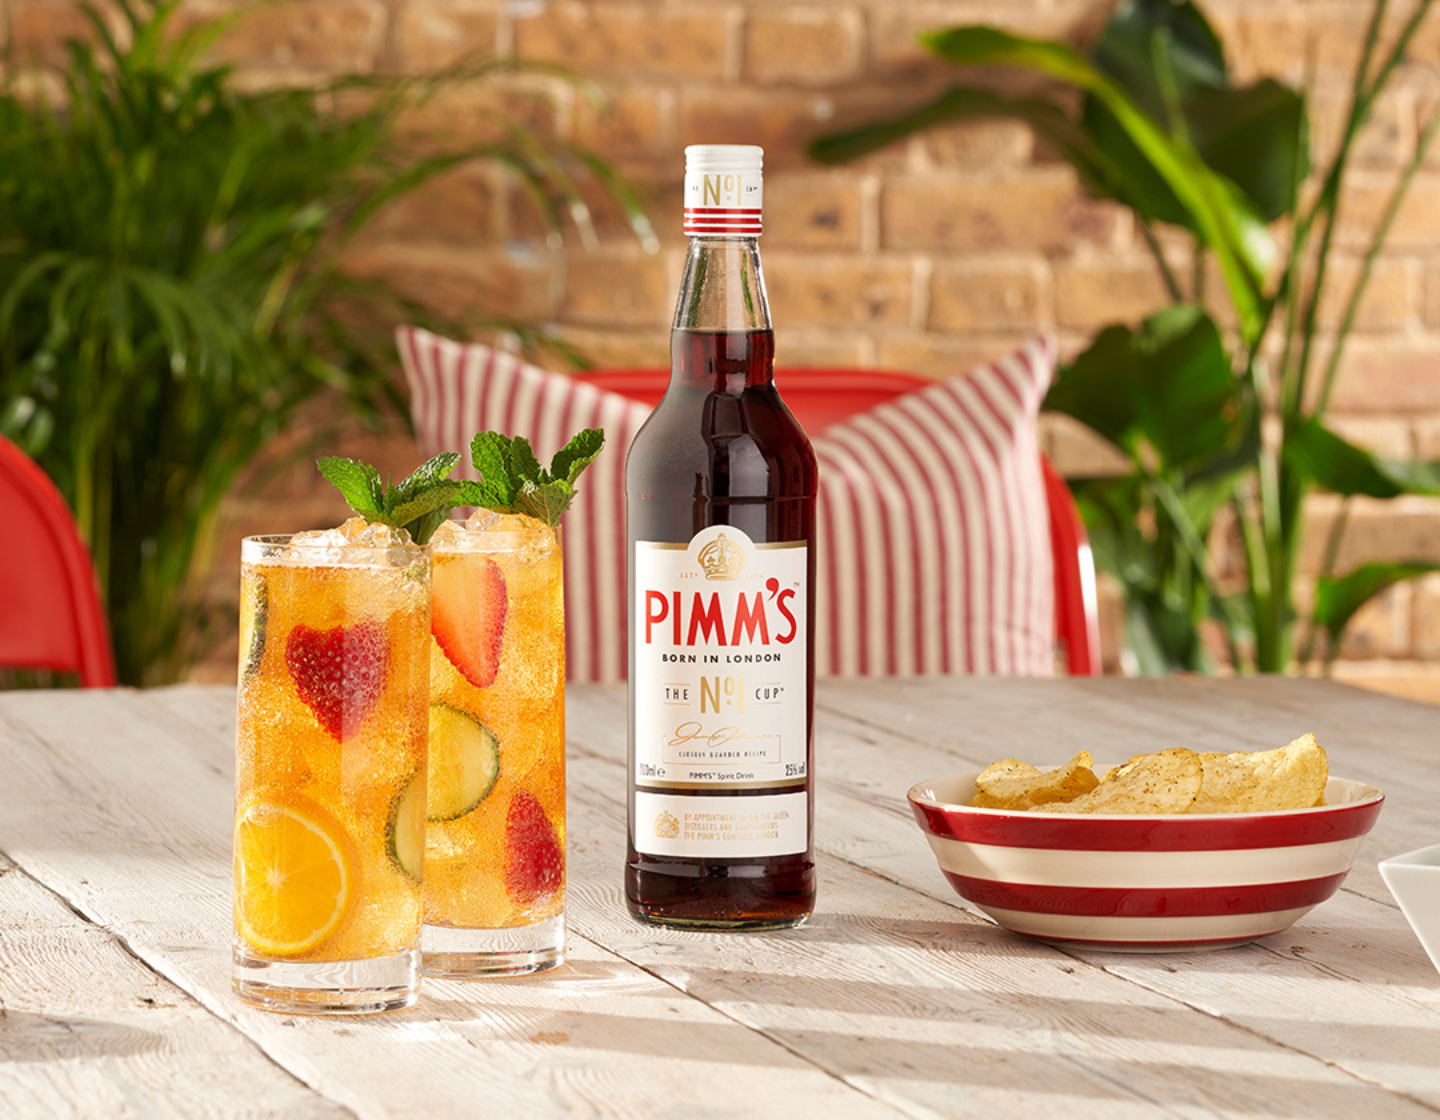 Botella de Pimm's sobre una mesa junto a dos vasos llenos de cócteles y un plato de papas fritas. 